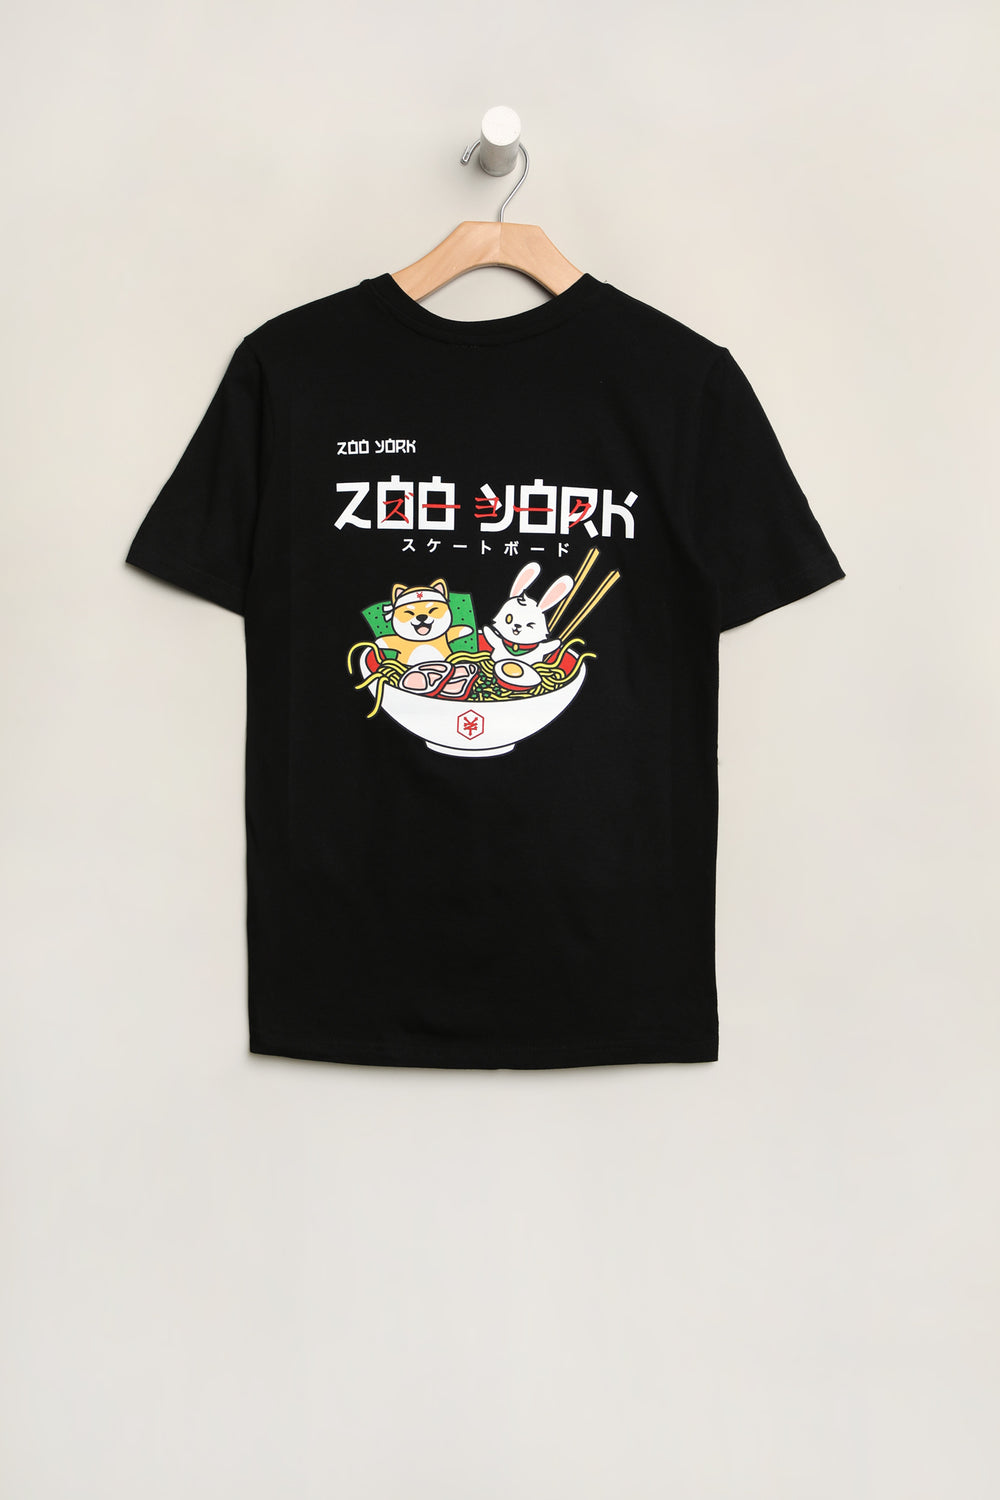 T-Shirt Imprimé Ramen Zoo York Junior T-Shirt Imprimé Ramen Zoo York Junior